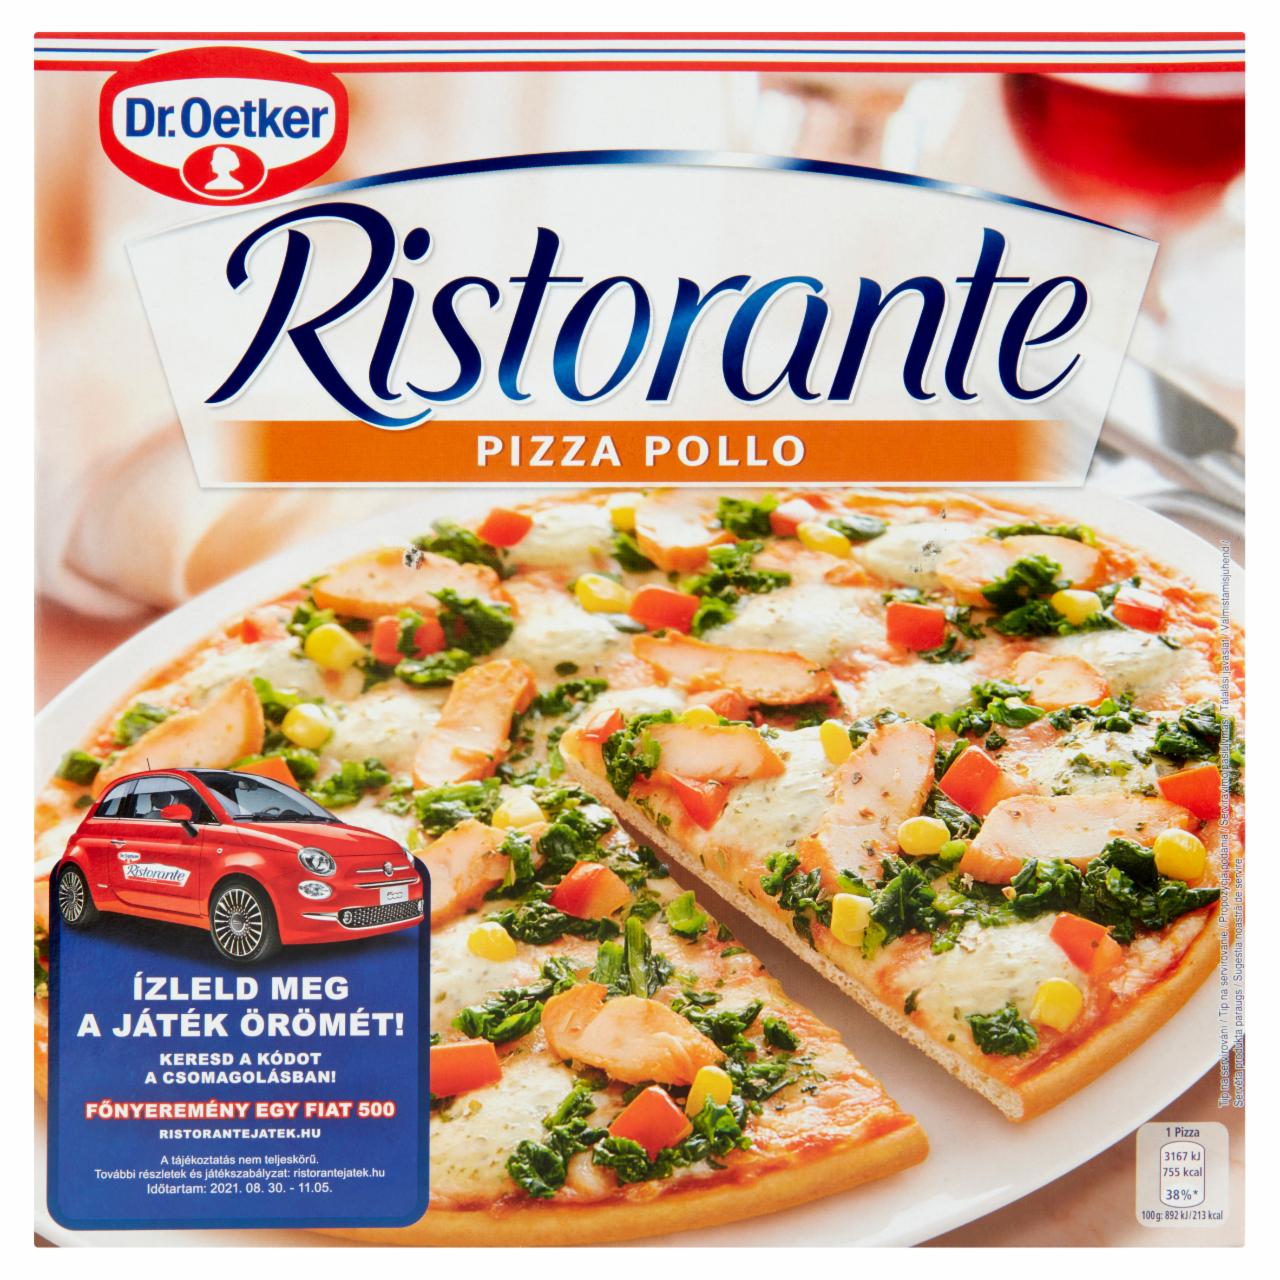 Képek - Dr. Oetker Ristorante Pizza Pollo gyorsfagyasztott pizza sajttal és pácolt csirkemellel 355 g